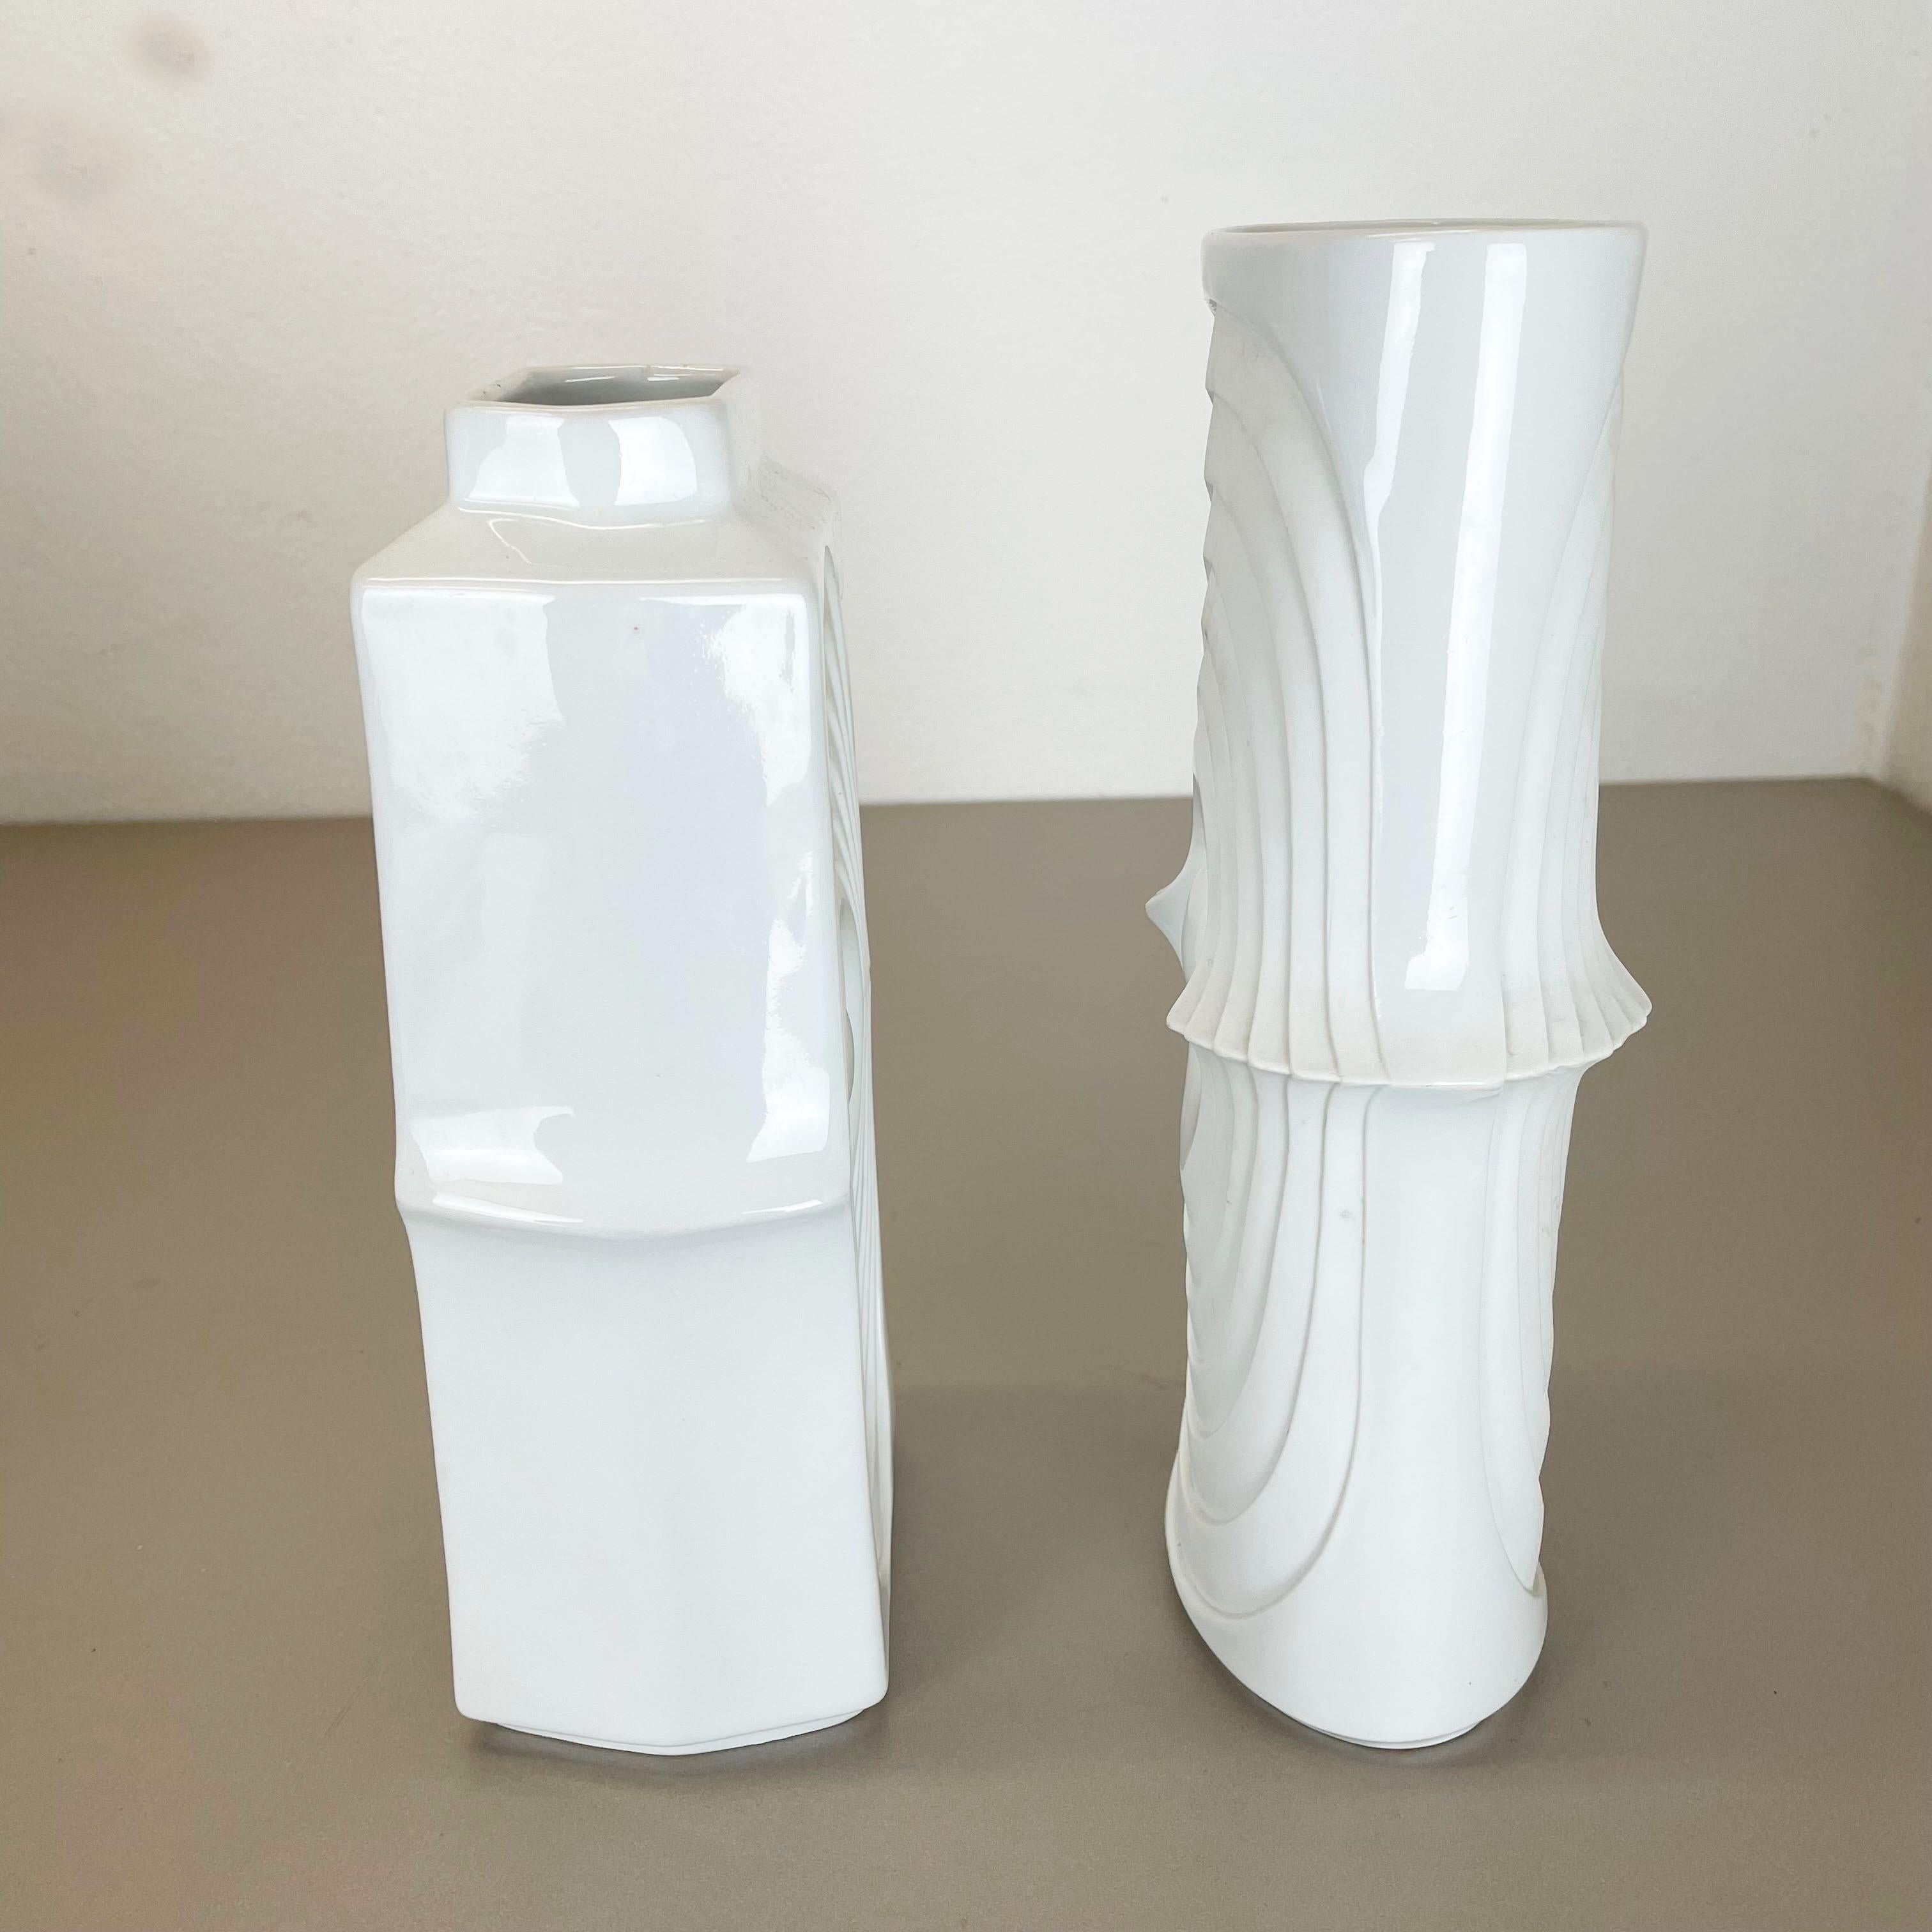 Set of 2 Original Porcelain OP Art Vase Made by Royal Bavaria KPM Germany, 1970s For Sale 6